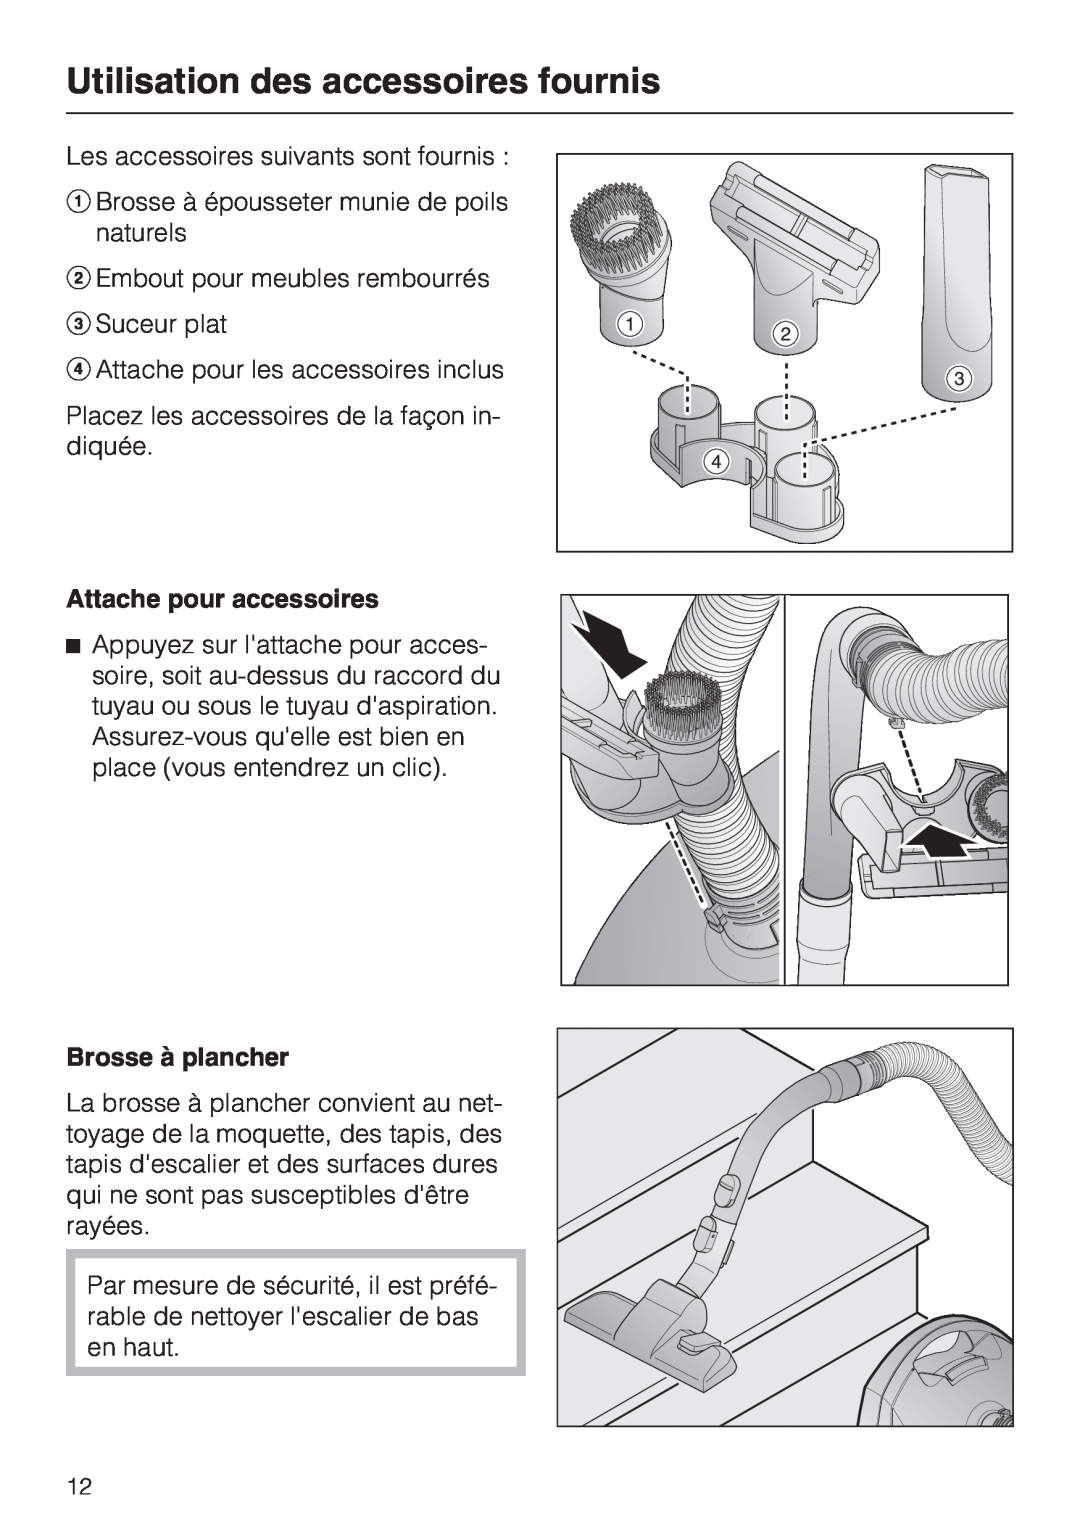 Miele S 2000 operating instructions Utilisation des accessoires fournis, Attache pour accessoires, Brosse à plancher 